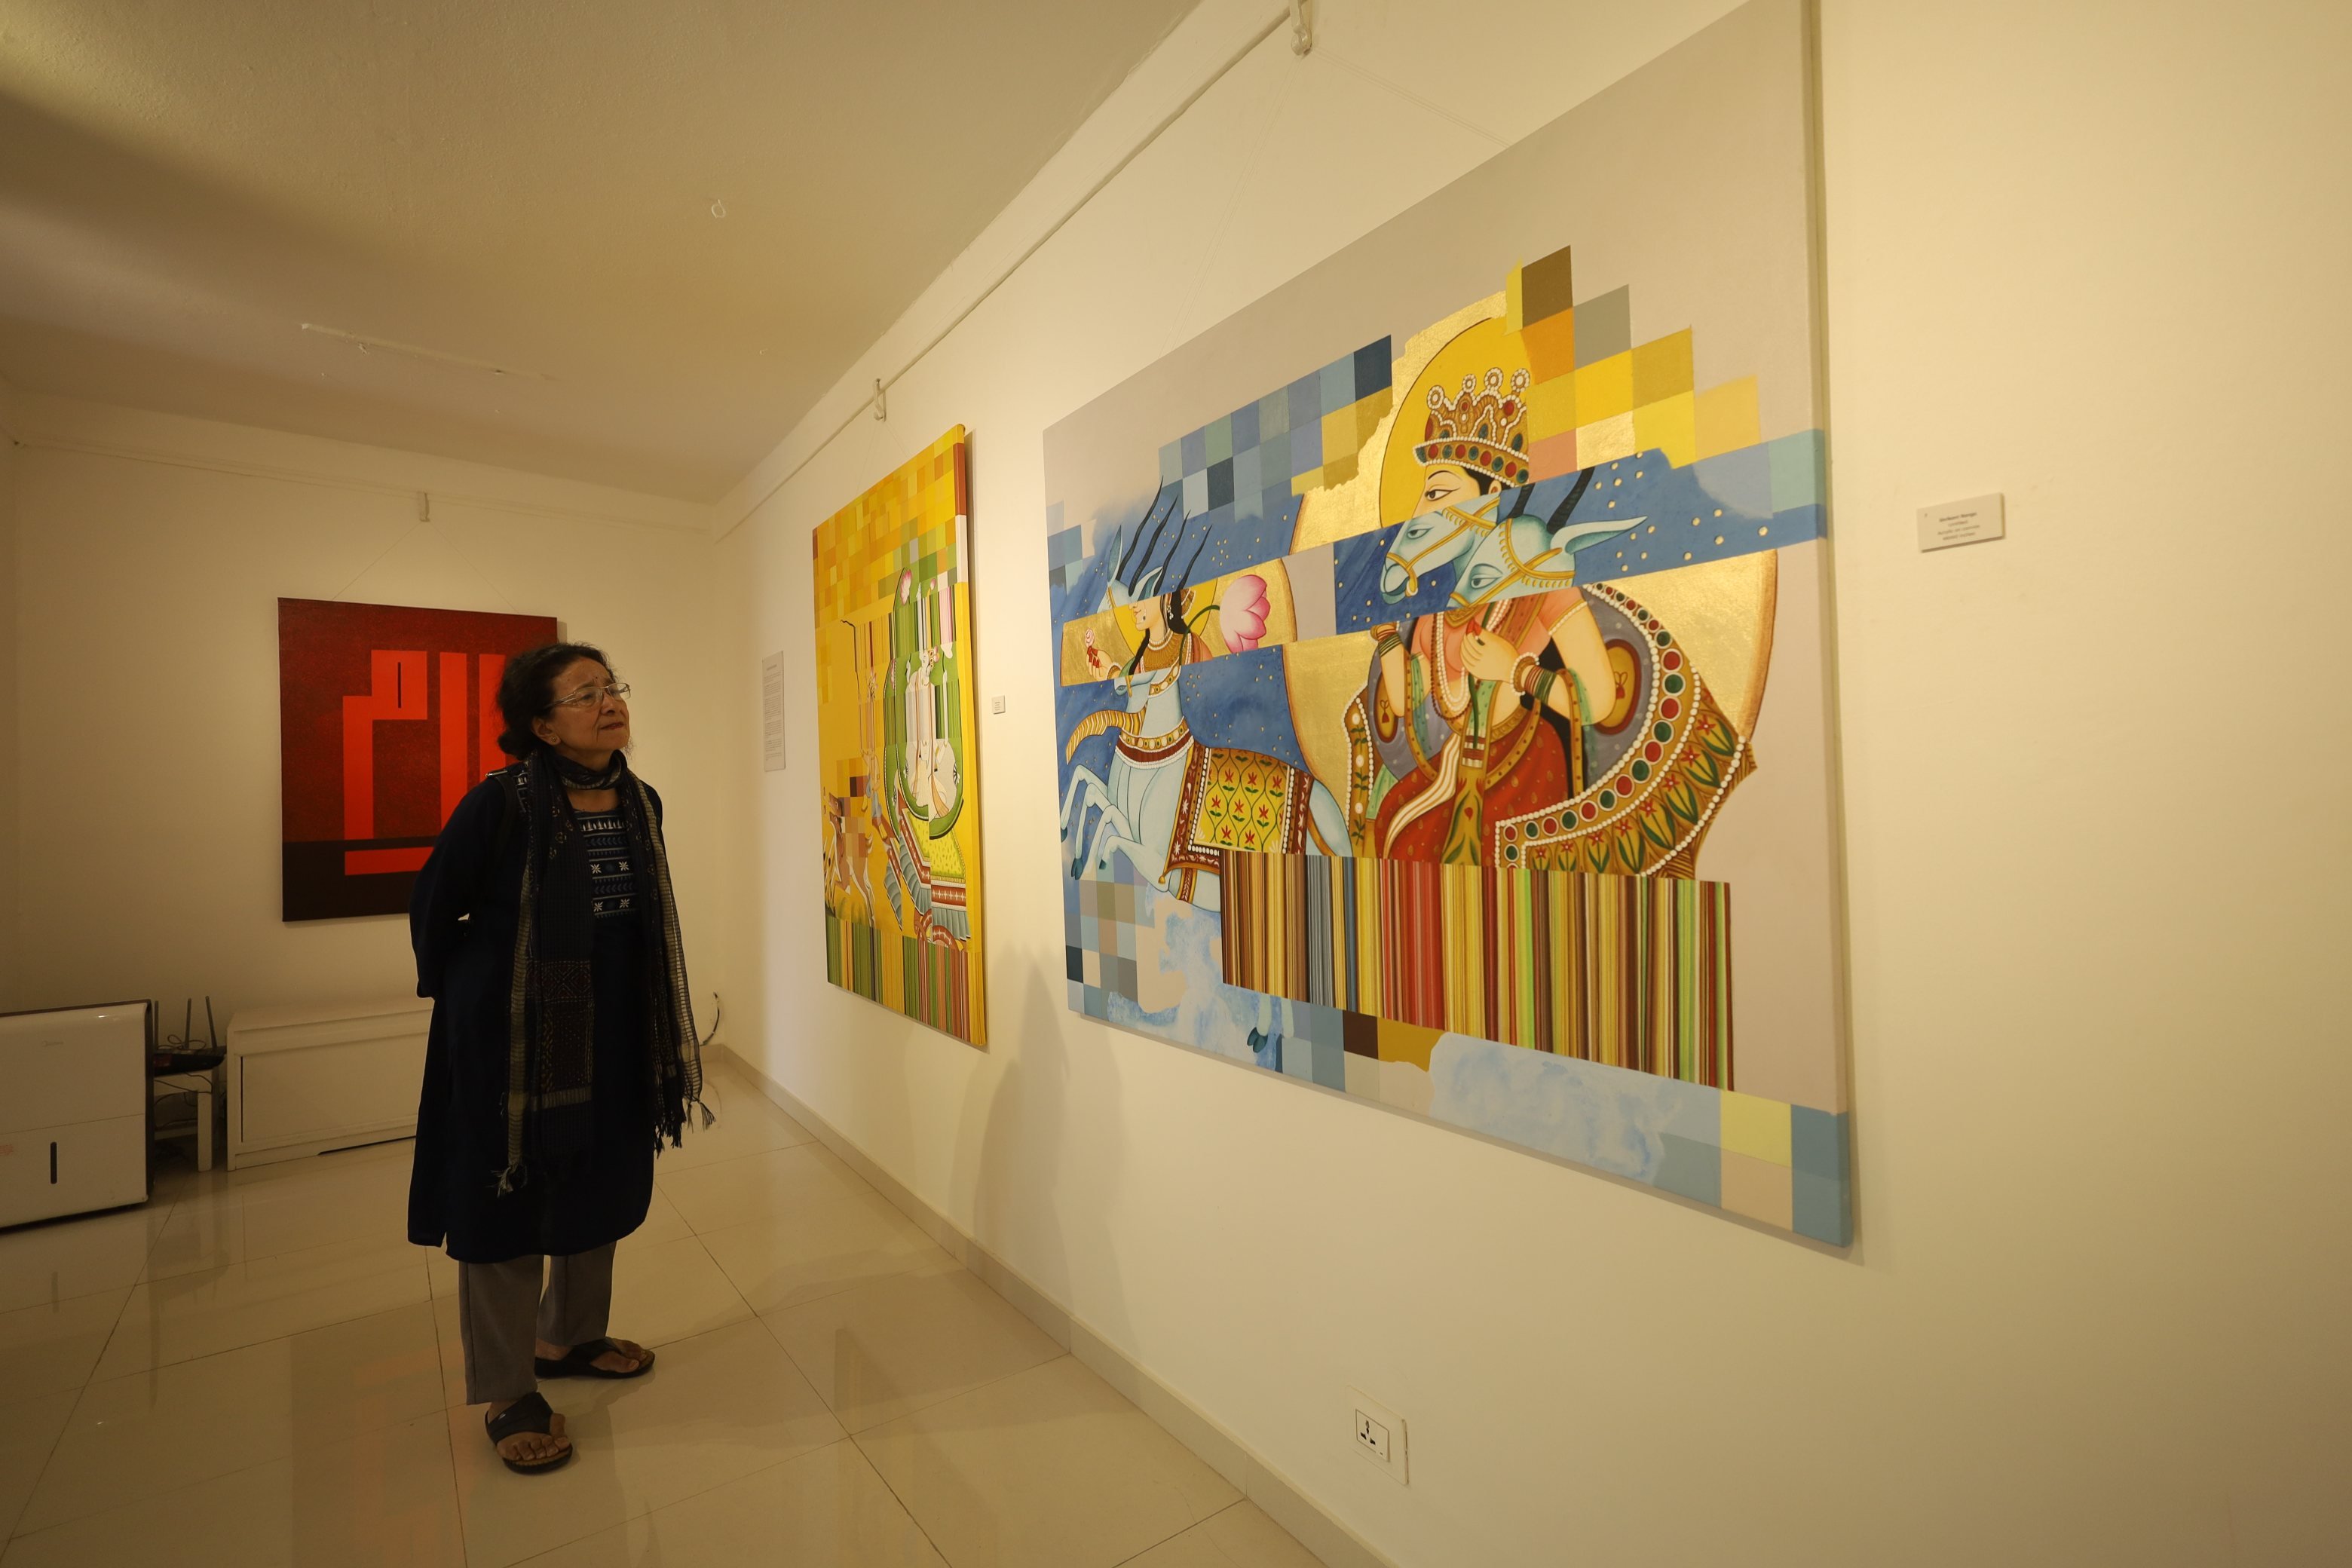 भारतीय कलाकारहरूको चित्रकला प्रदर्शनी, तस्बिरमा हेर्नुहोस्